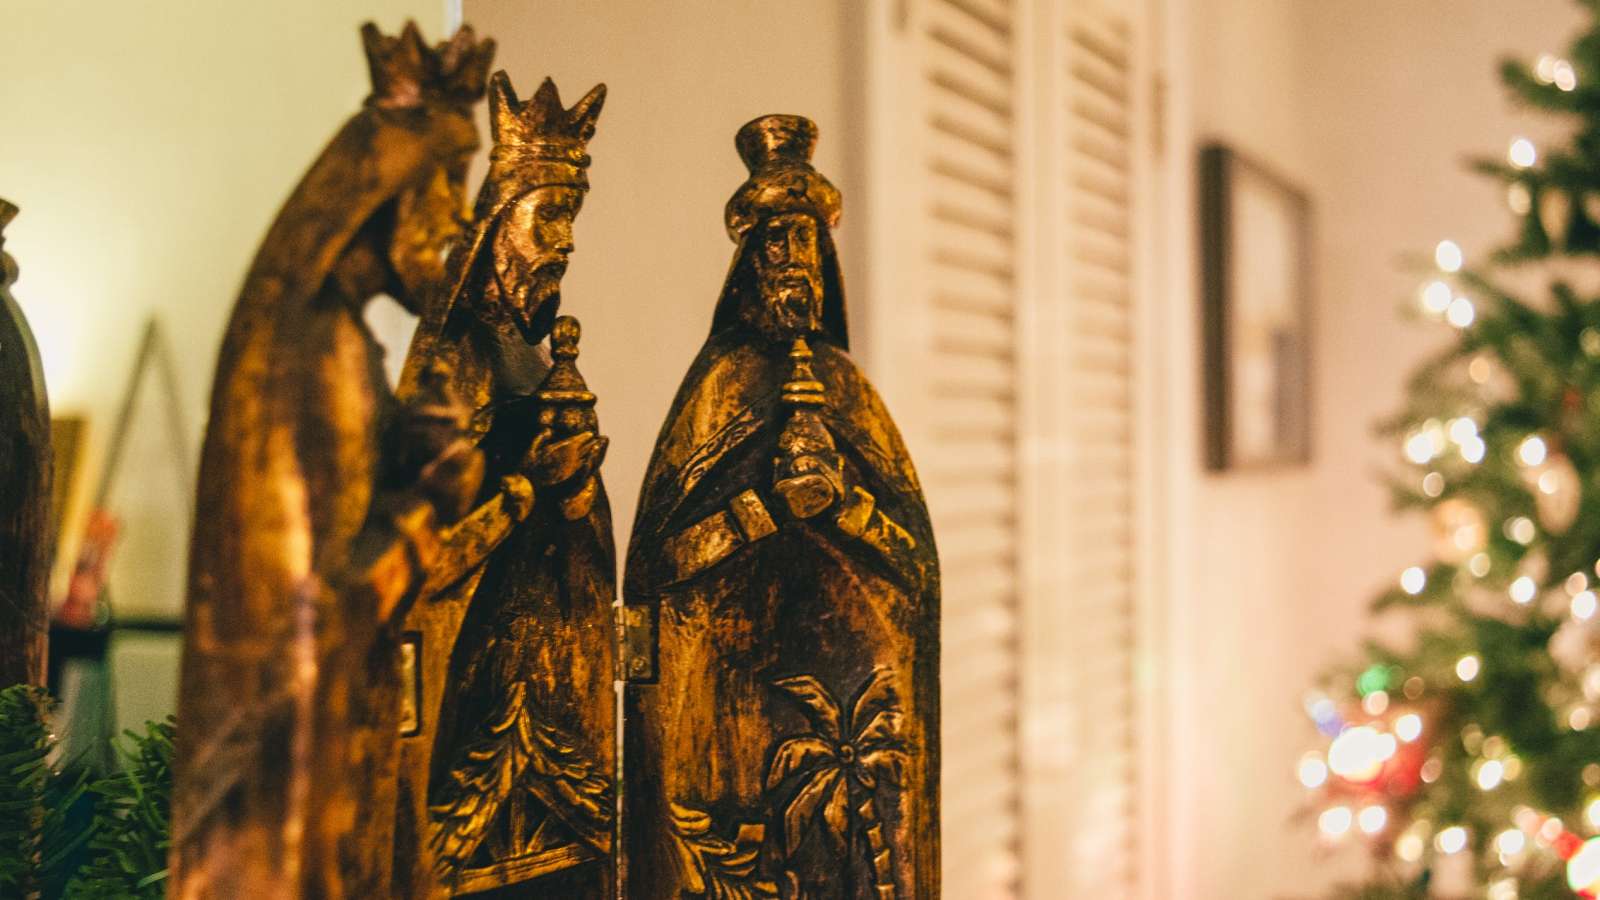 Regalos de Reyes Magos para acertar seguro con tu mujer